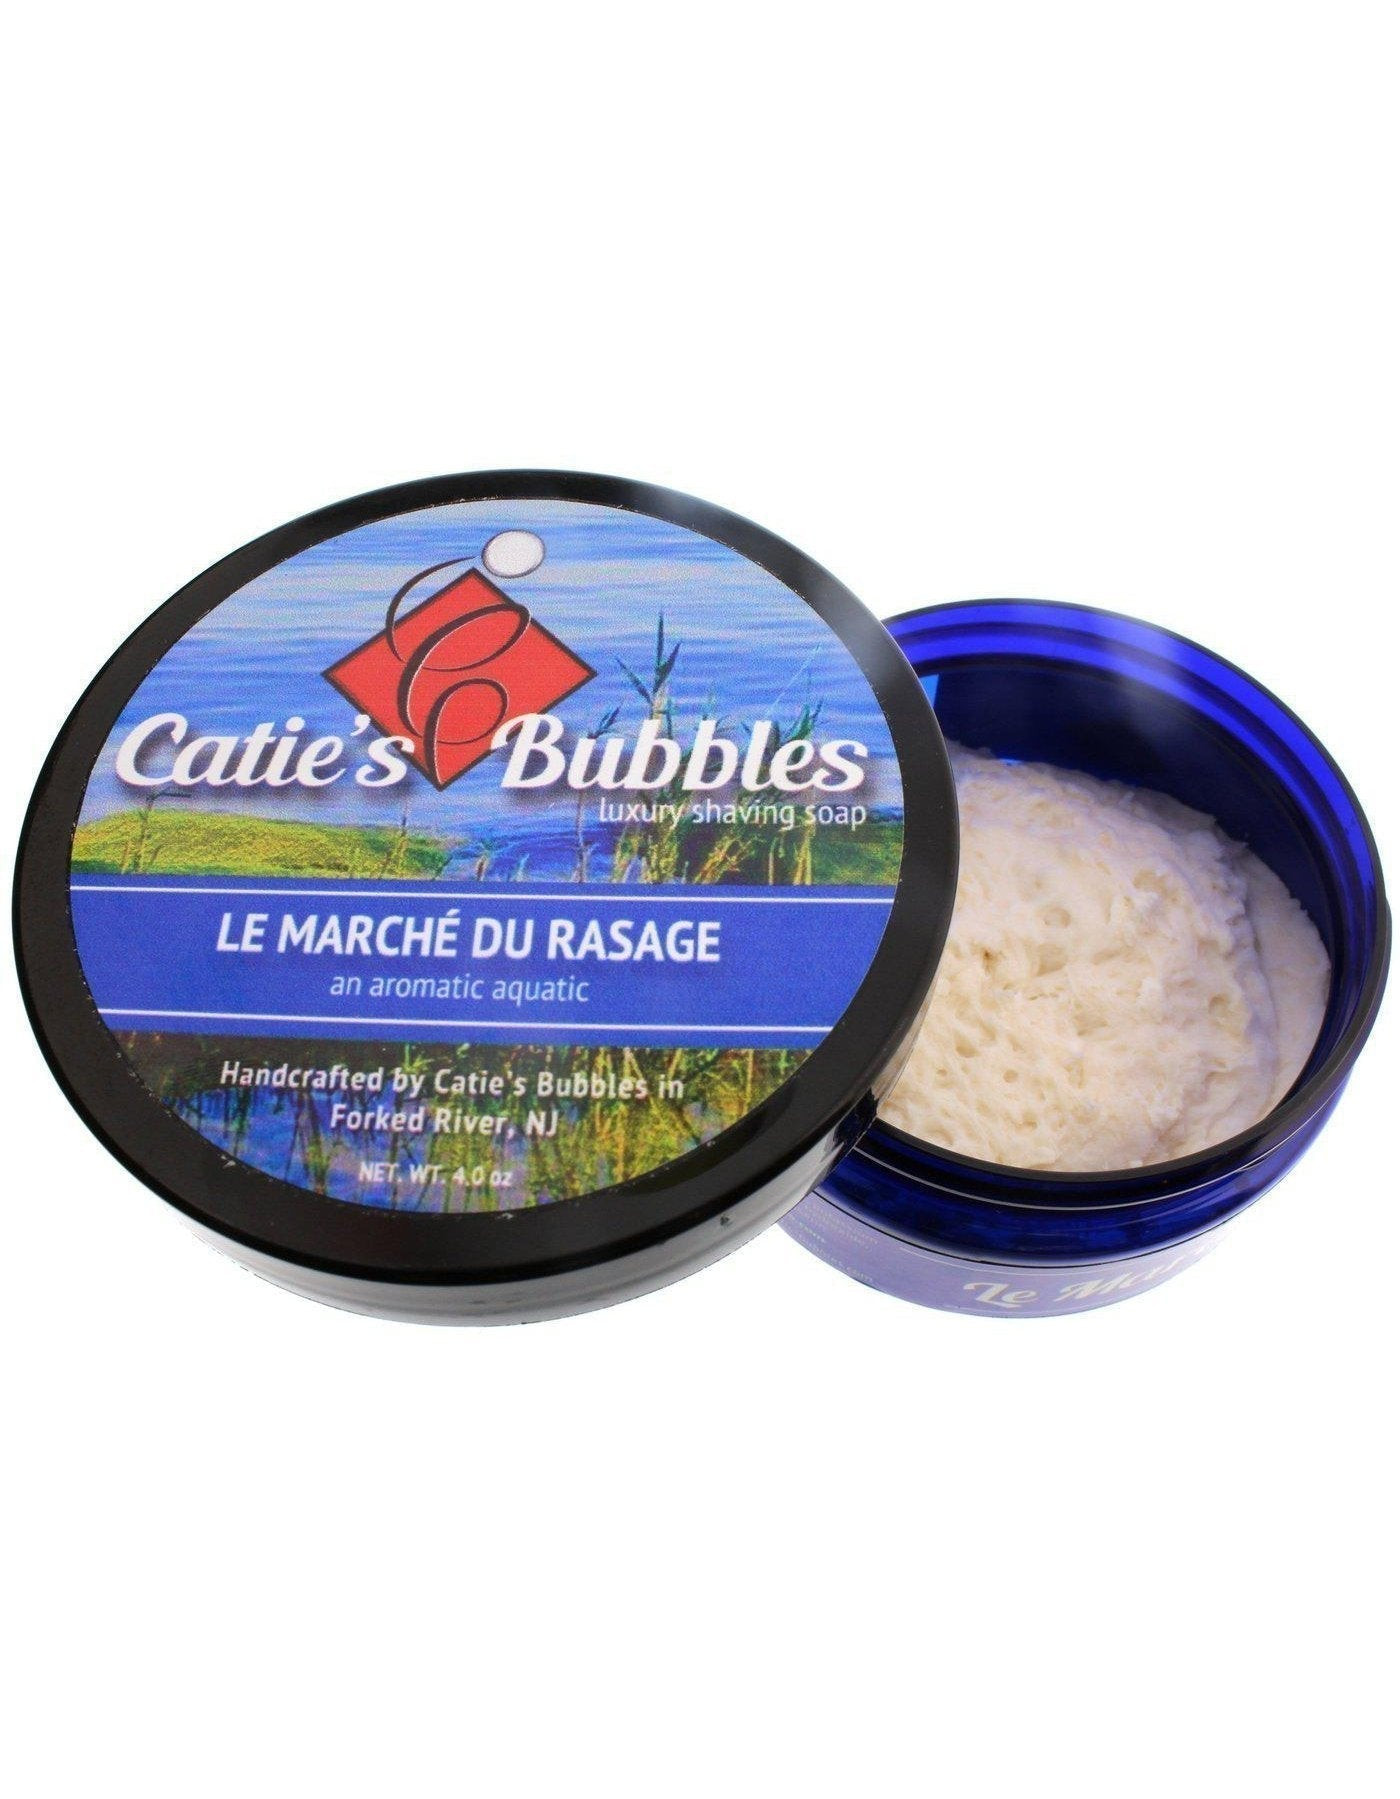 Product image 1 for Catie's Bubbles Shaving Soap, Le Marche du Rasage, 4oz.